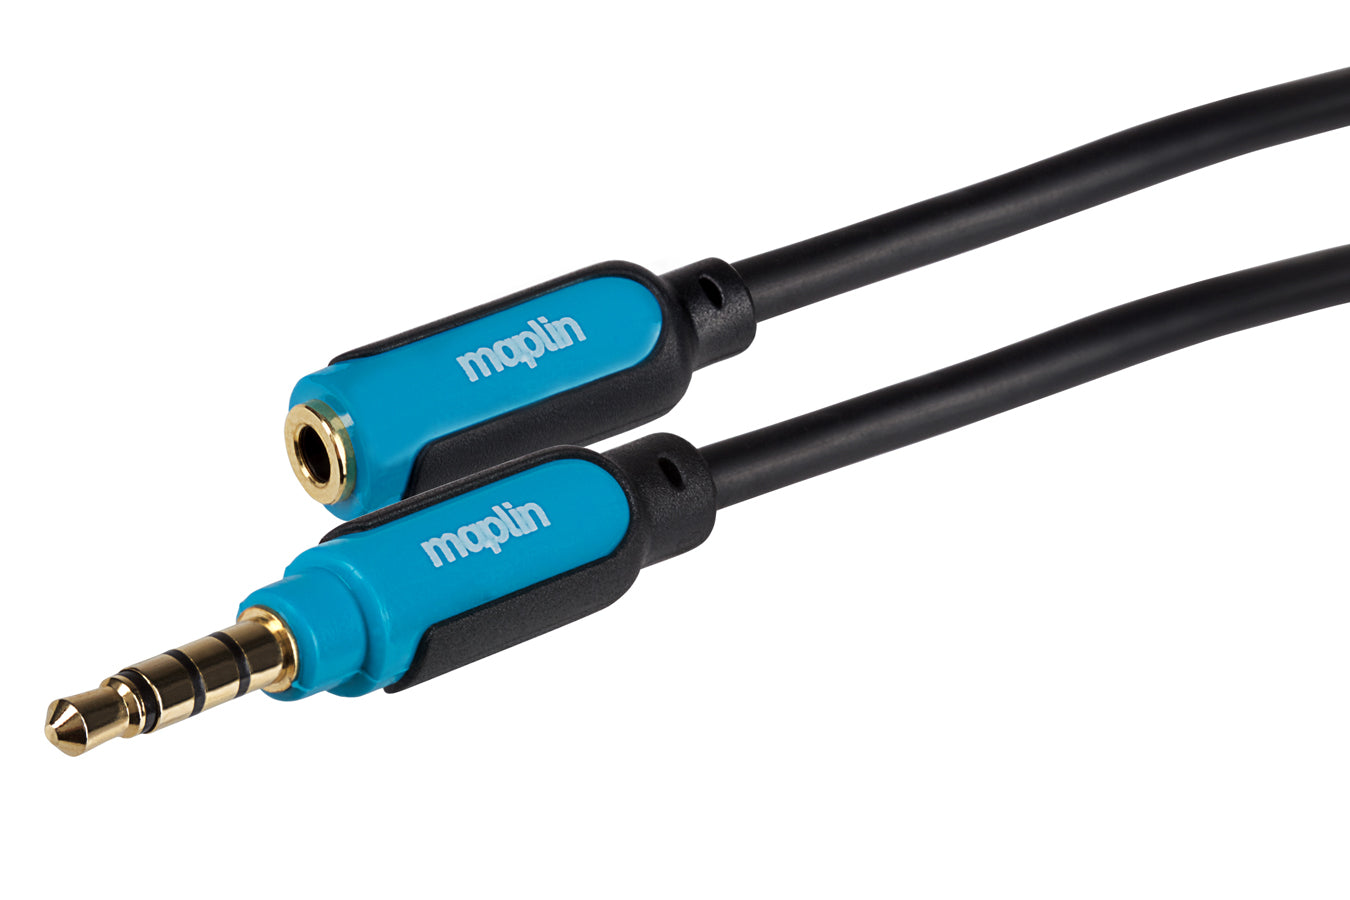 Maplin Premium 3.5mm 4 Pole Jack Extension Cable - Black, 3m, Cables